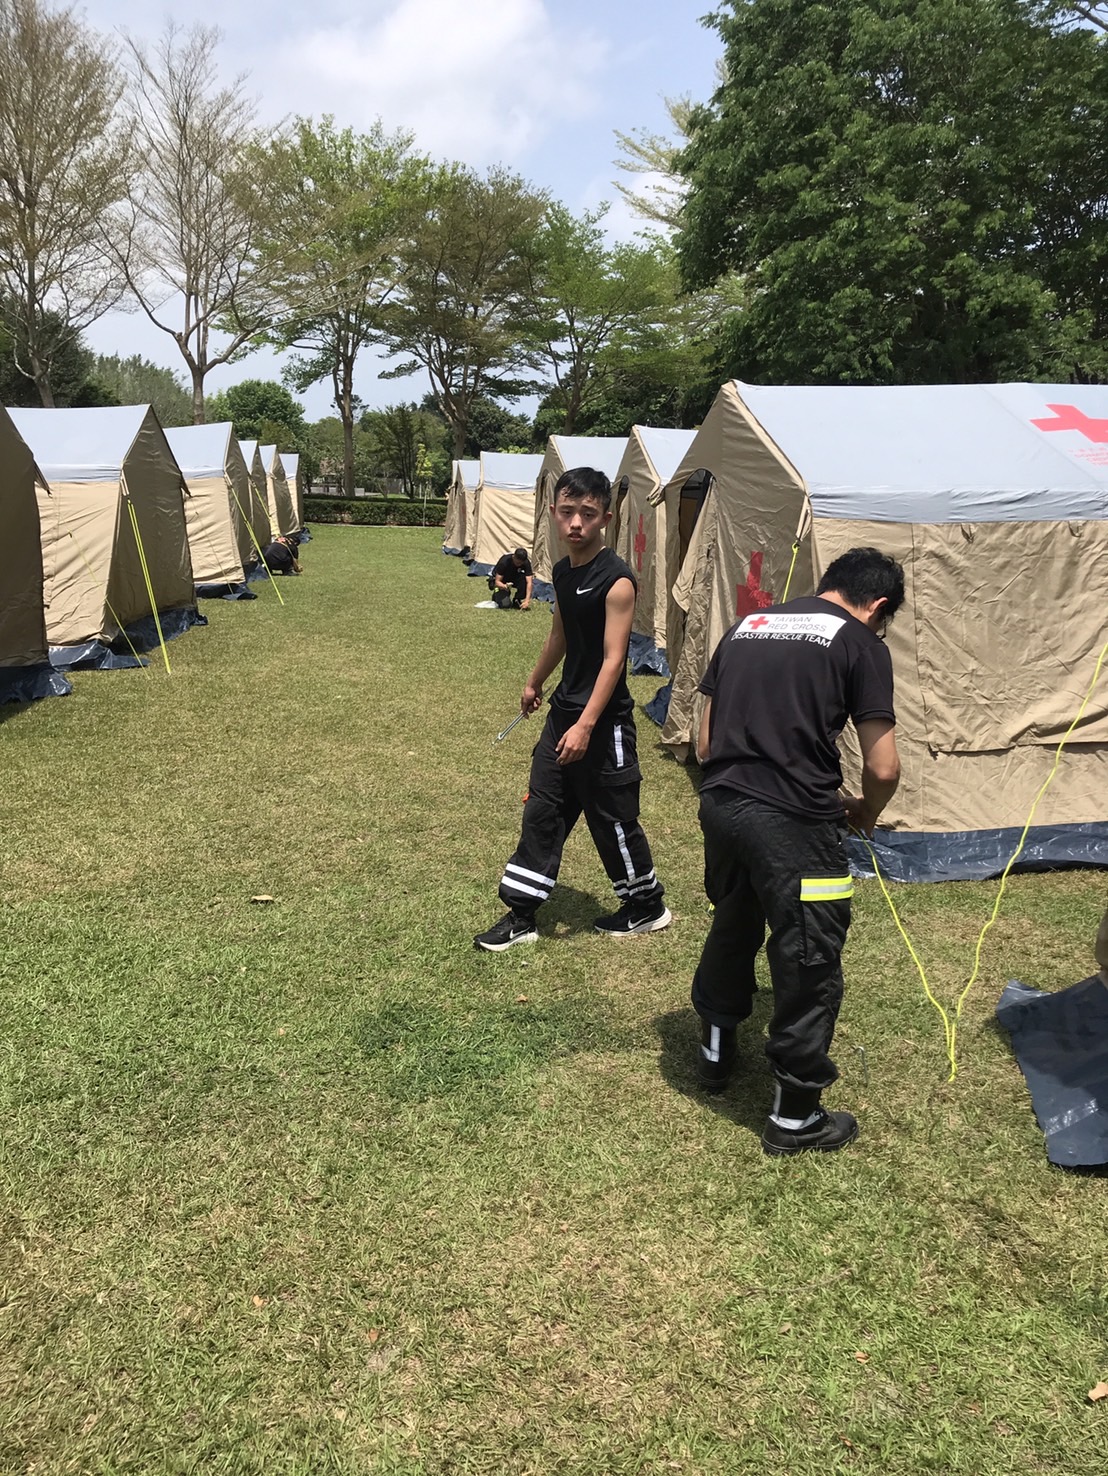 救災隊第四大隊協助至中華國小操場協助搭蓋20個帳篷